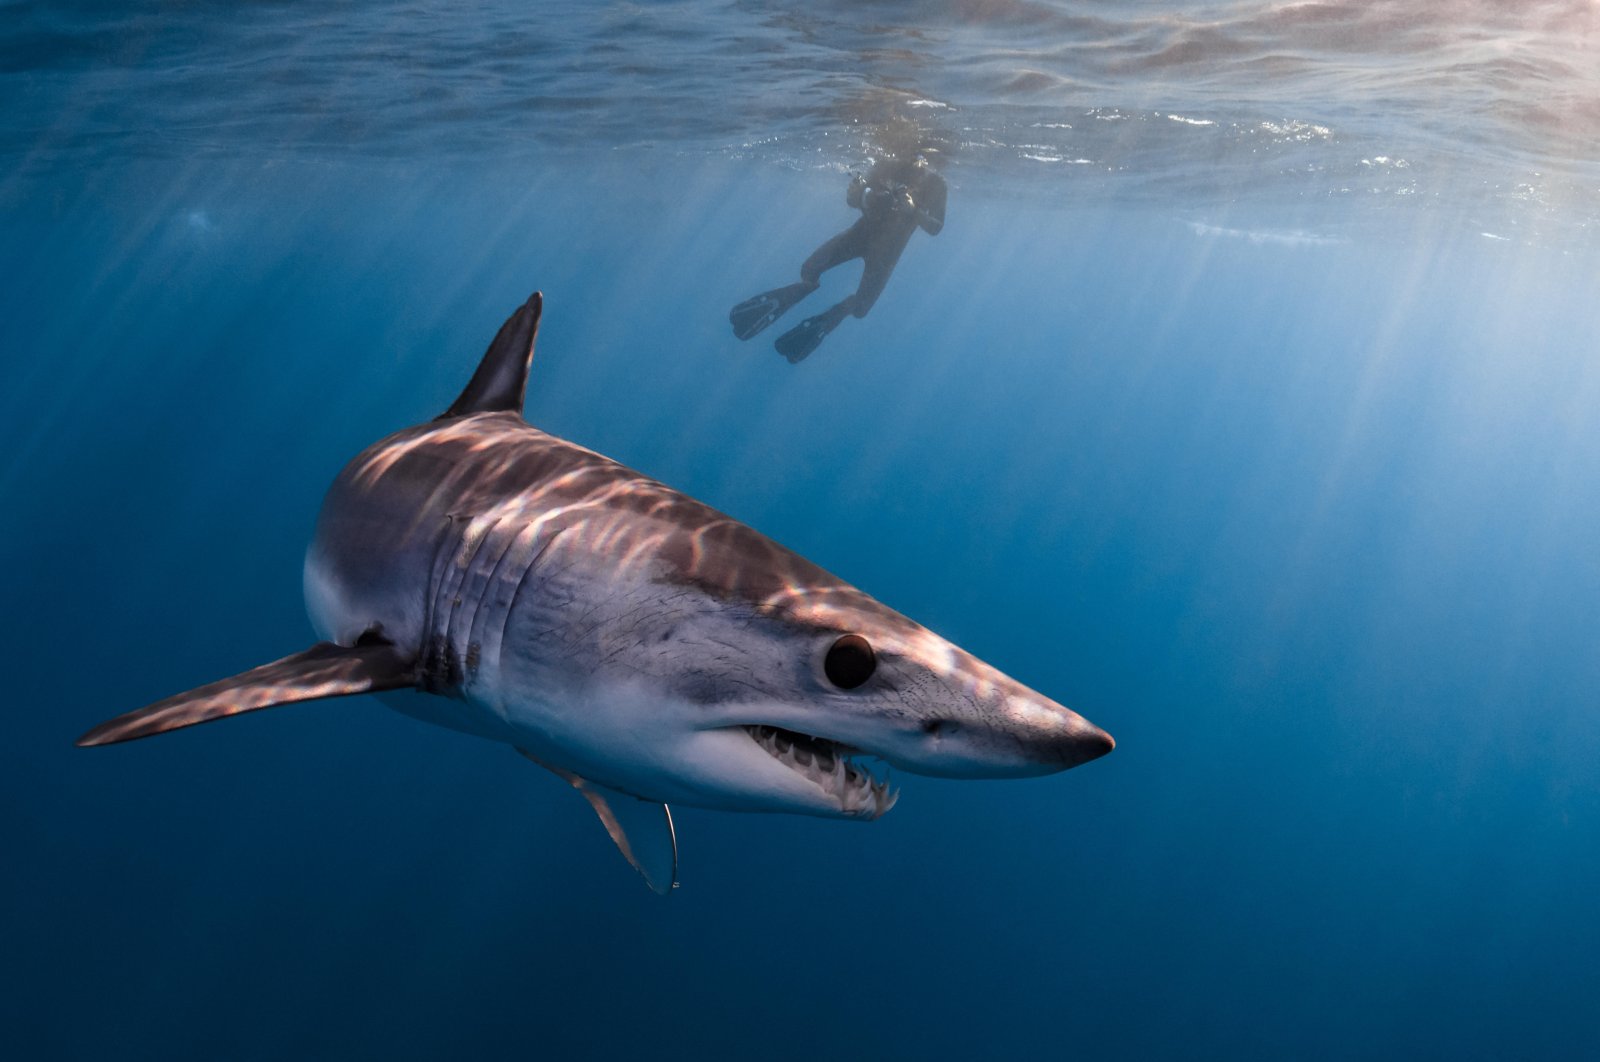 Mesir menutup bentangan garis pantai Laut Merah setelah hiu membunuh perenang